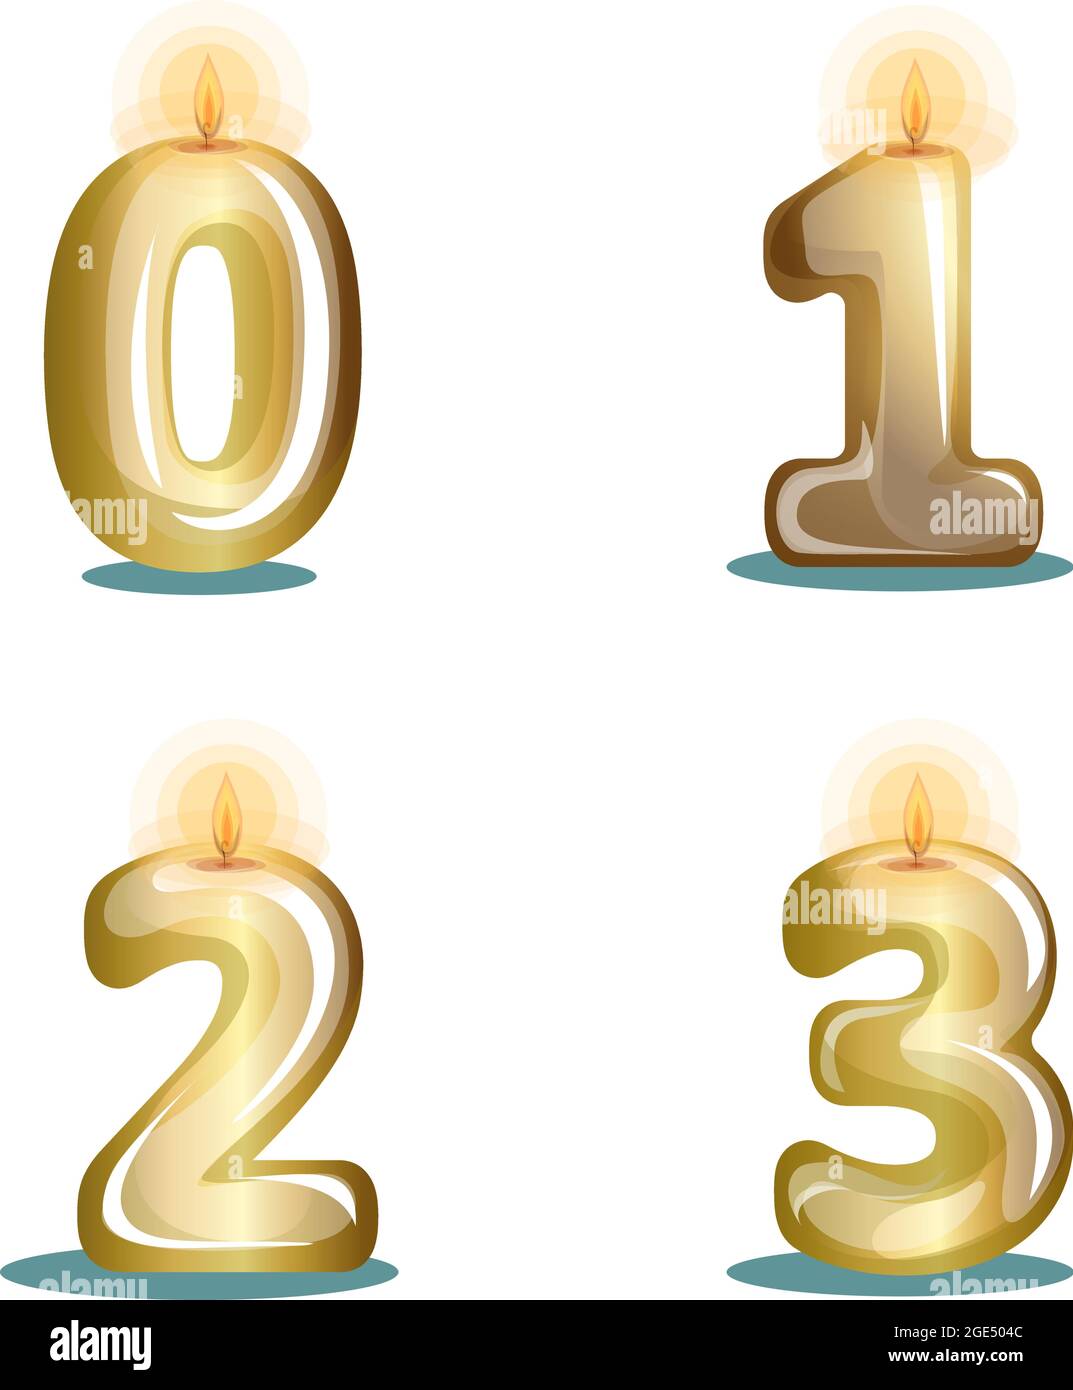 Vektorbild von Kerzen in Gold in Form von Zahlen auf weißem Hintergrund in Cartoon-Stil metallisiert Stock Vektor